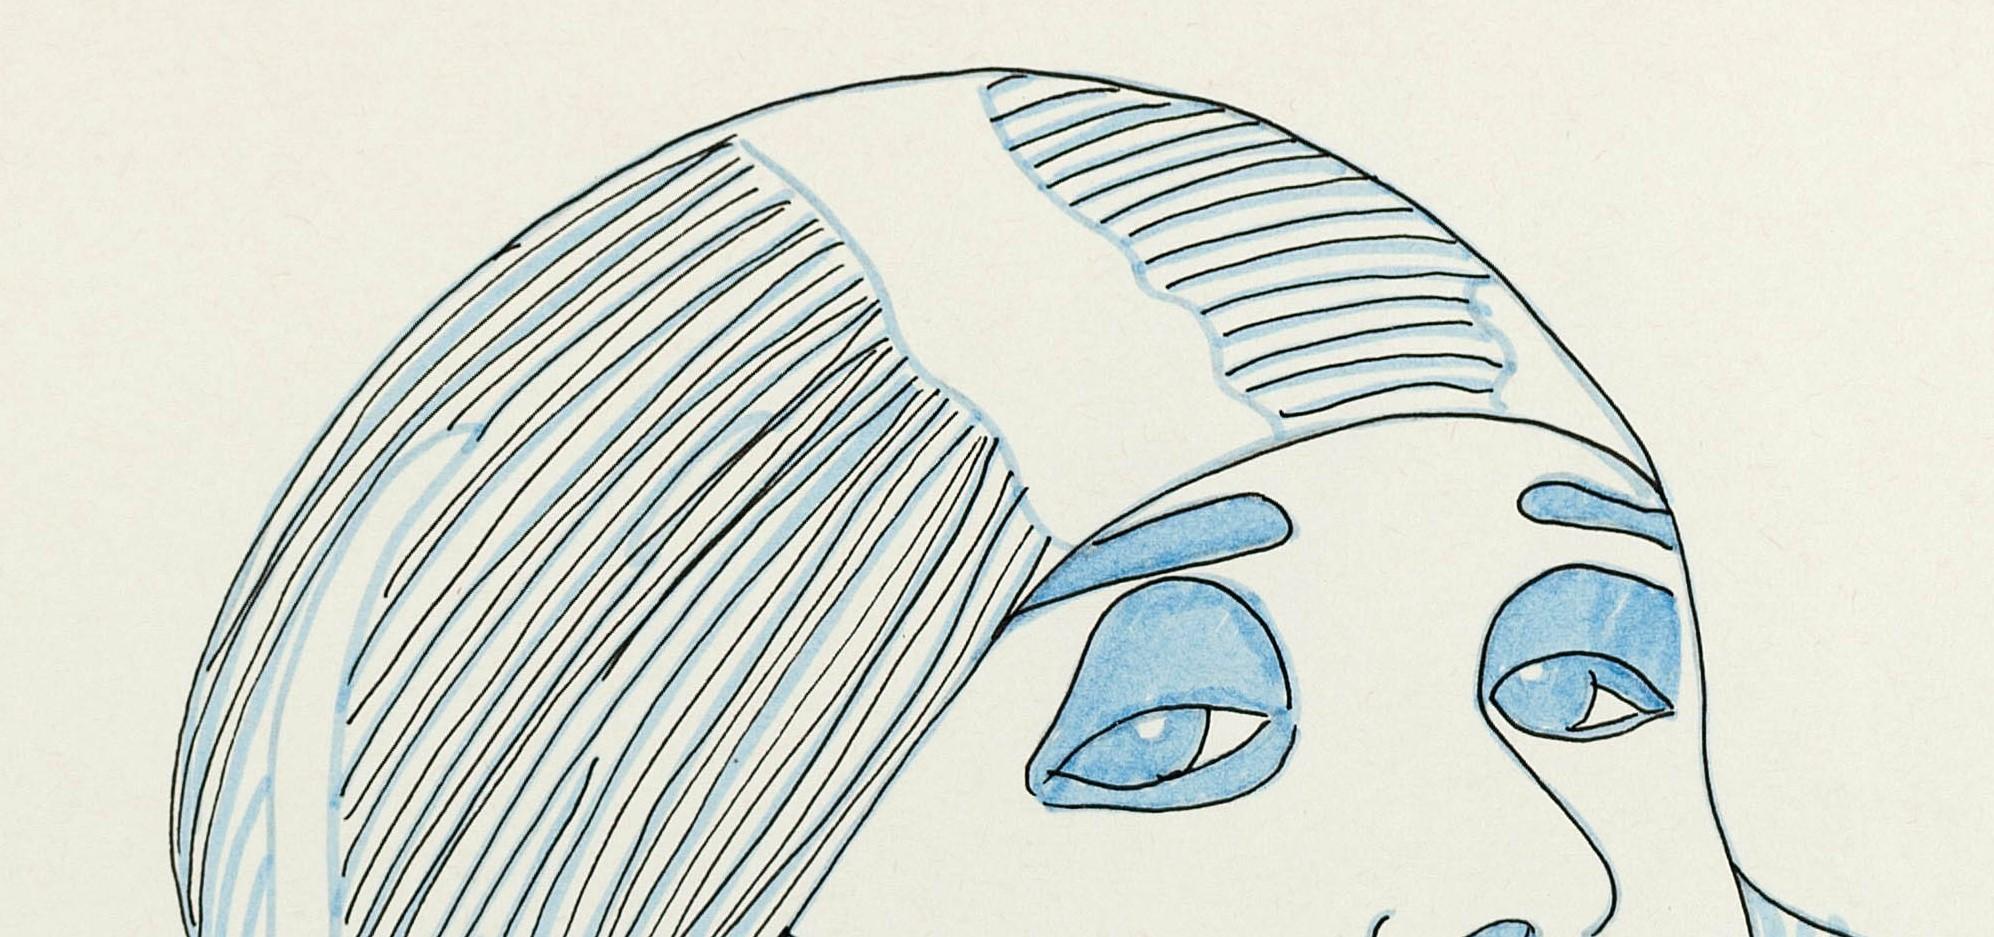 Pola Negri I. Zeichnung aus der Serie The Dis-enchanted. (Weiß), Portrait, von Paloma Castello